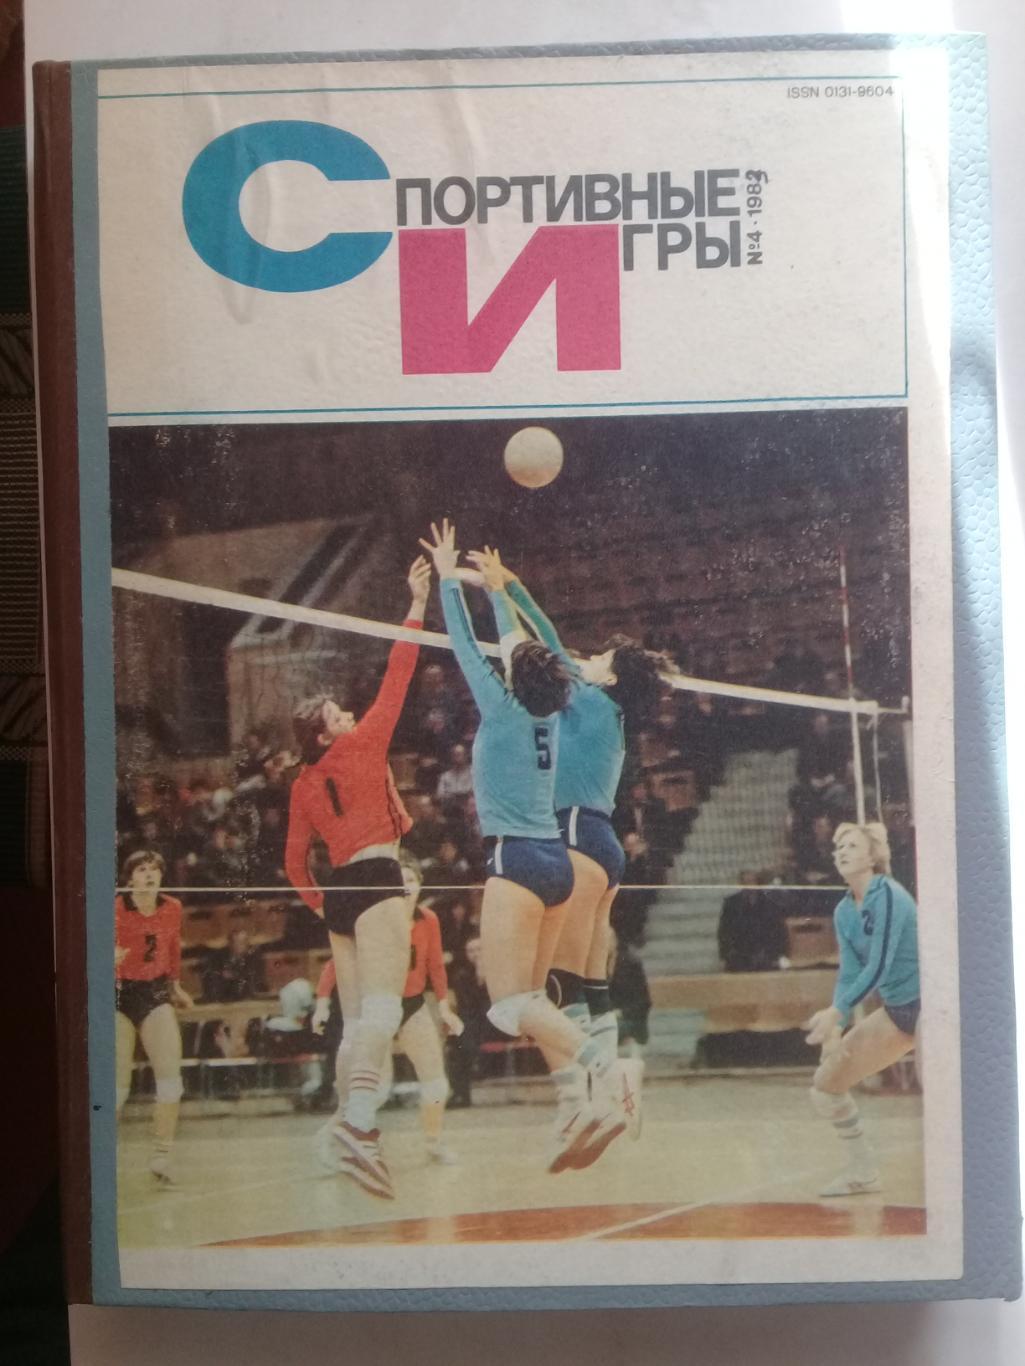 (Только для dk7586) Журнал Спортивные игры 1983 год. Годовой комплект.